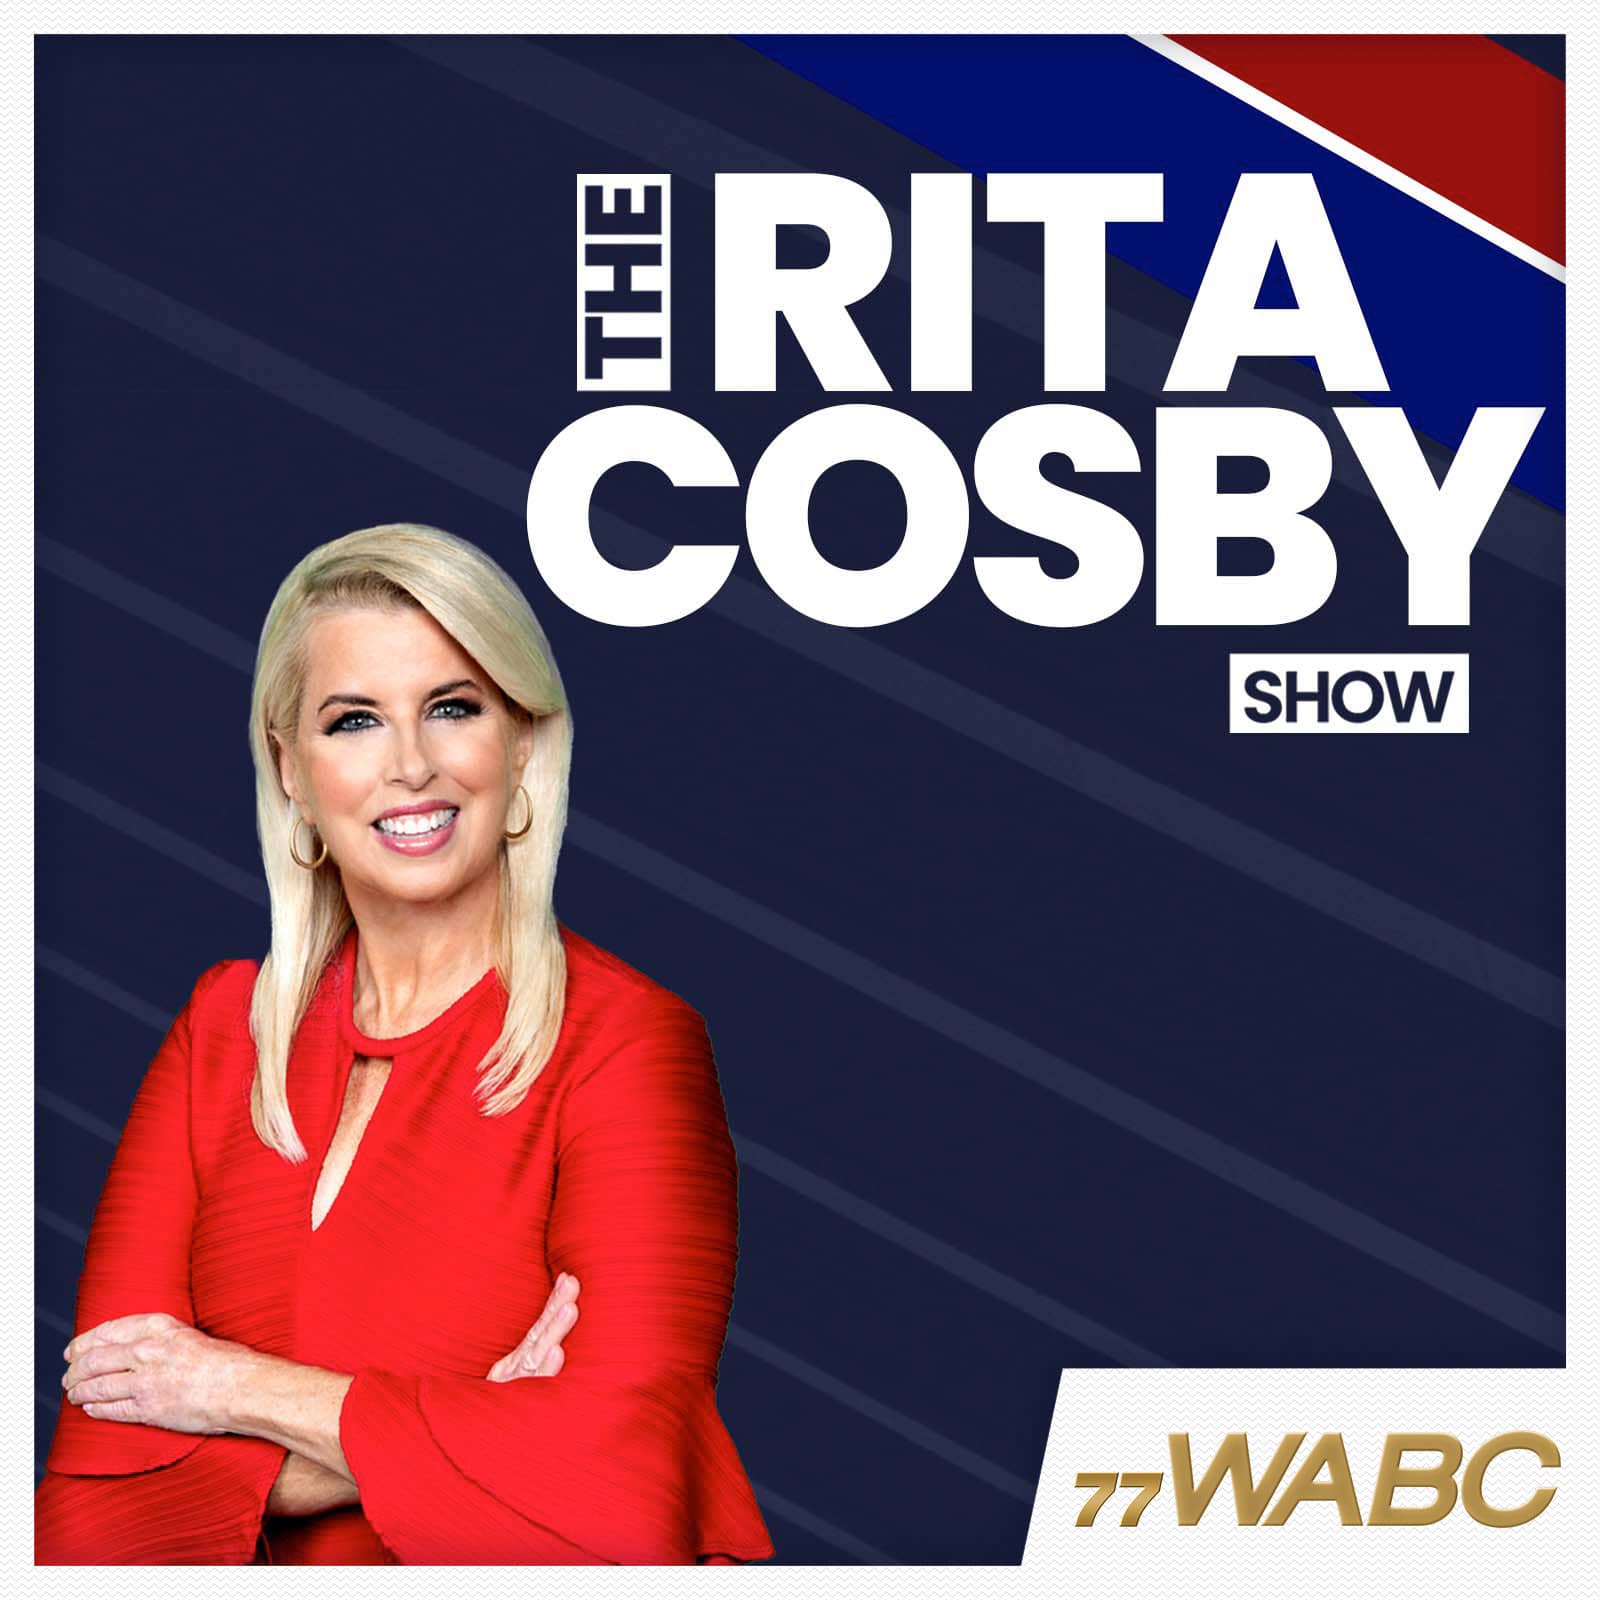 rita-cosby-podcast-new-logo476118